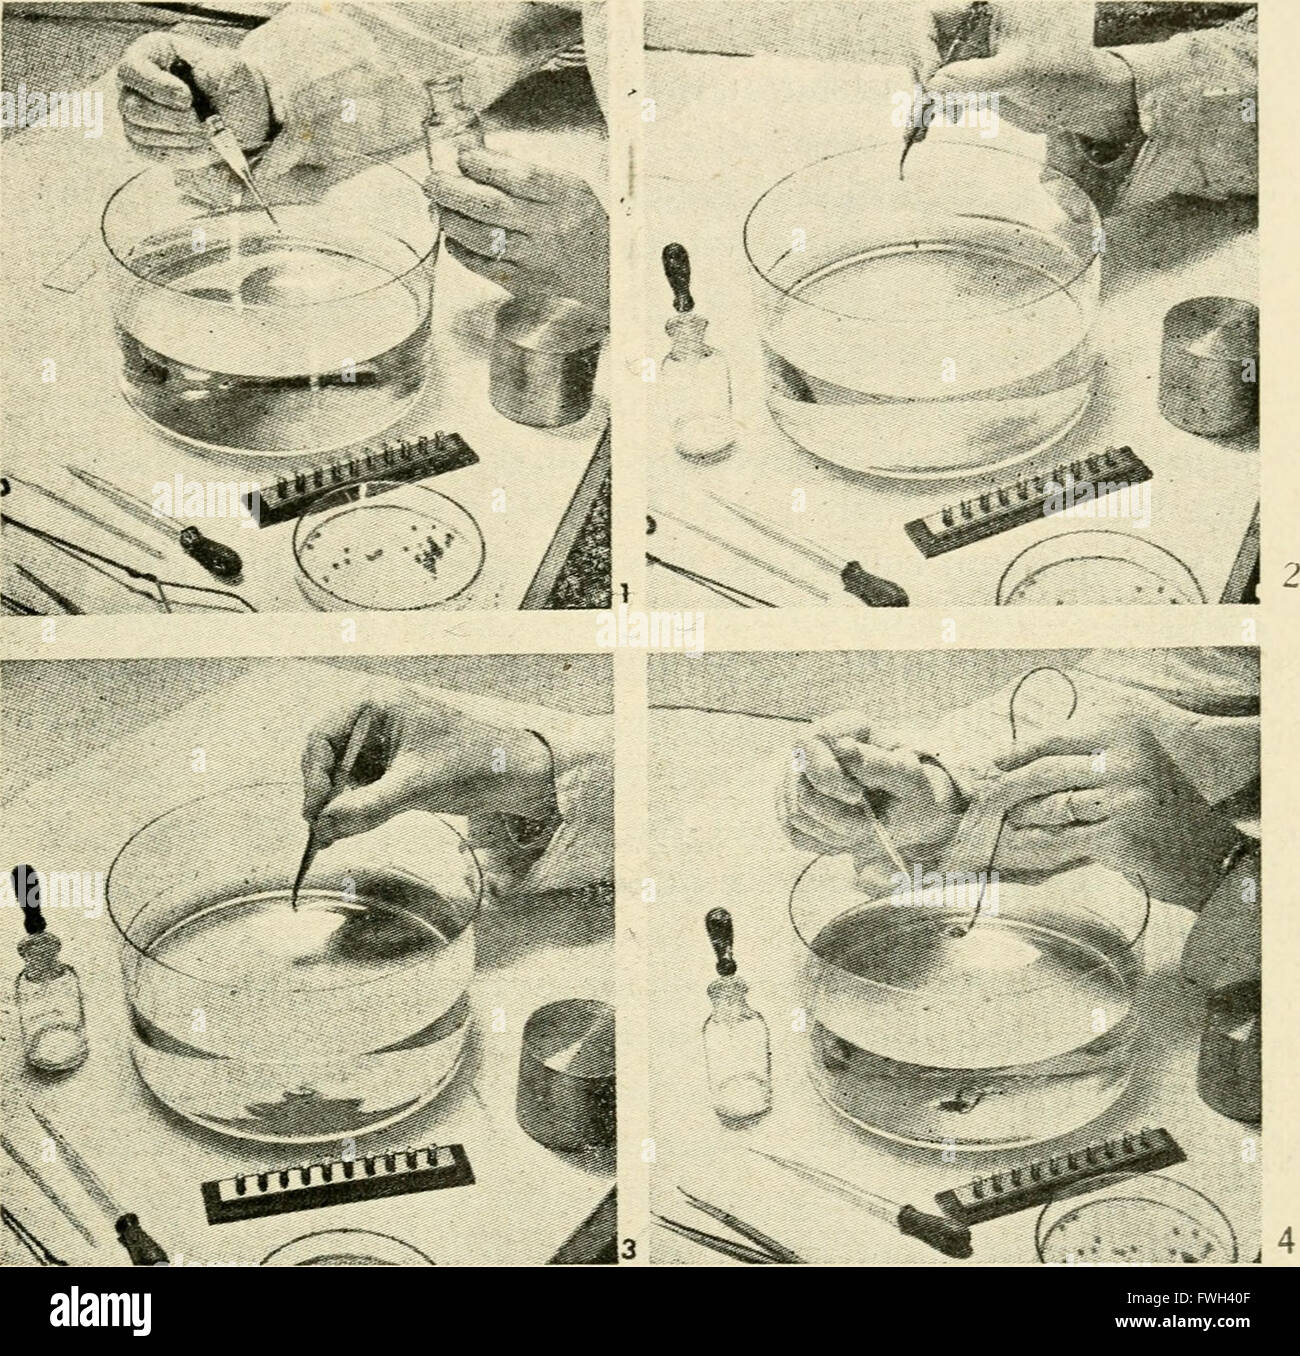 Le microscope électronique, son développement, le rendement actuel et les possibilités futures (1948) Banque D'Images